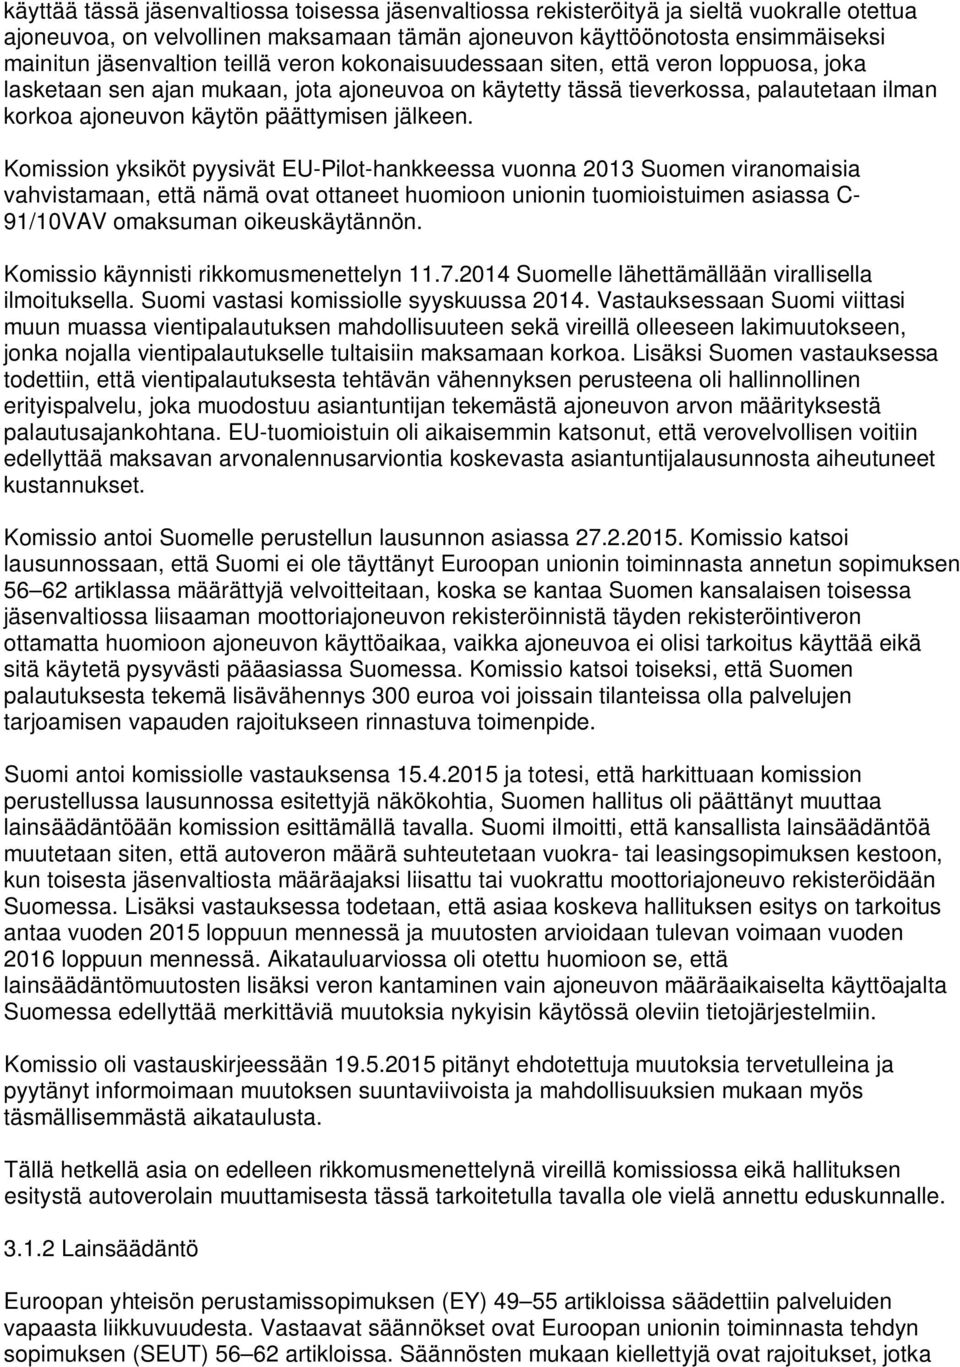 Komission yksiköt pyysivät EU-Pilot-hankkeessa vuonna 2013 Suomen viranomaisia vahvistamaan, että nämä ovat ottaneet huomioon unionin tuomioistuimen asiassa C- 91/10VAV omaksuman oikeuskäytännön.